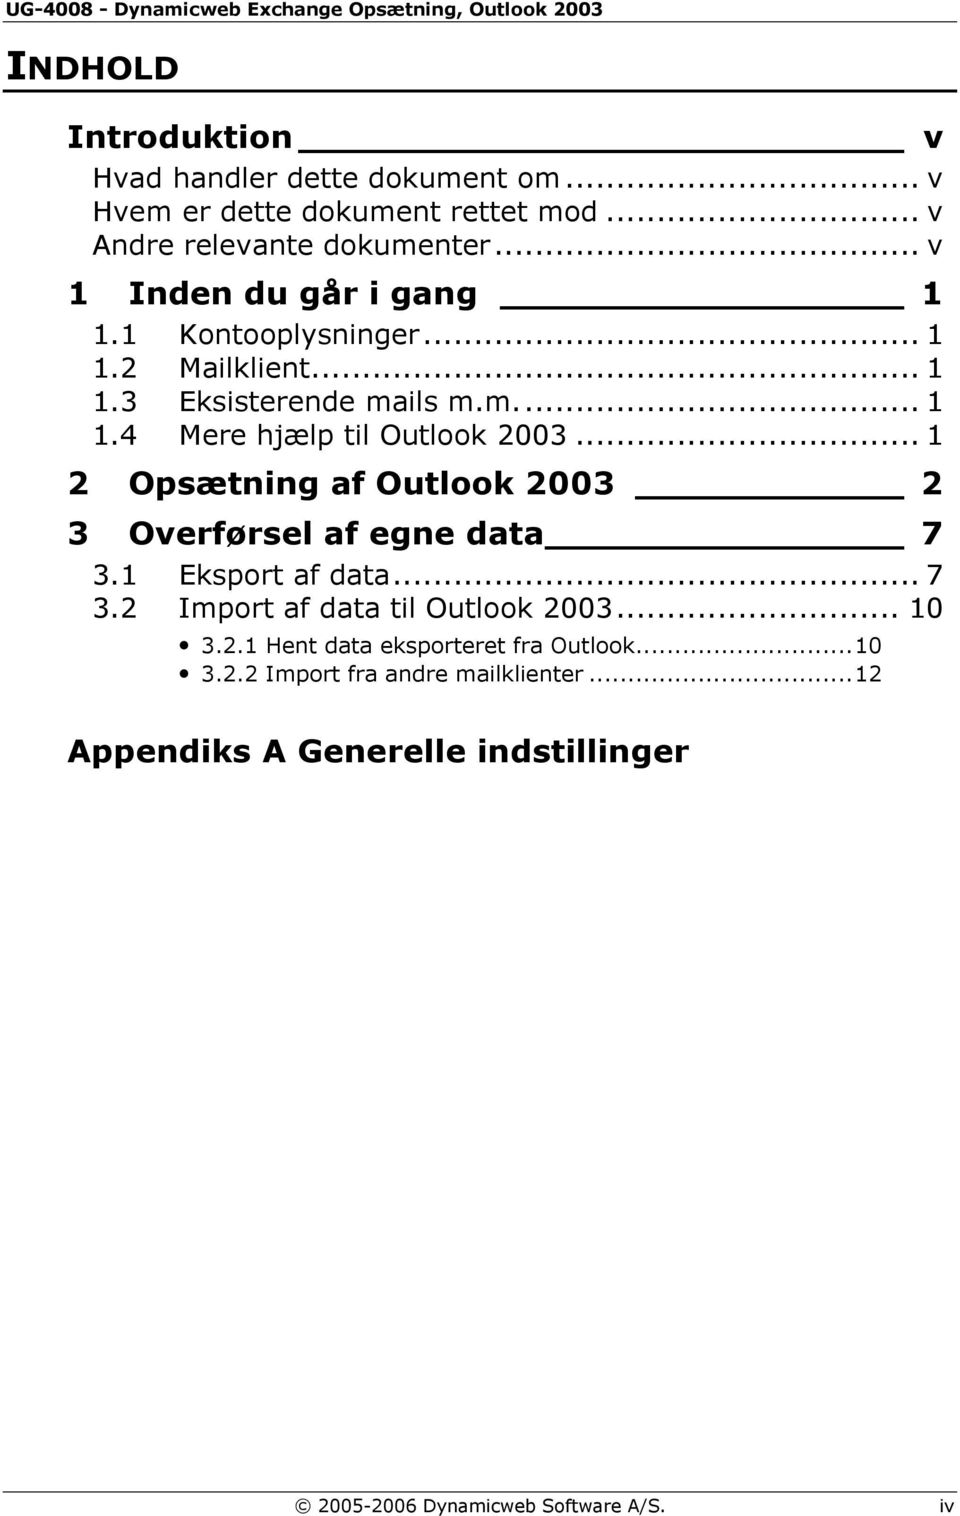 .. 1 2 Opsætning af Outlook 2003 2 3 Overførsel af egne data 7 3.1 Eksport af data... 7 3.2 Import af data til Outlook 2003... 10 3.2.1 Hent data eksporteret fra Outlook.